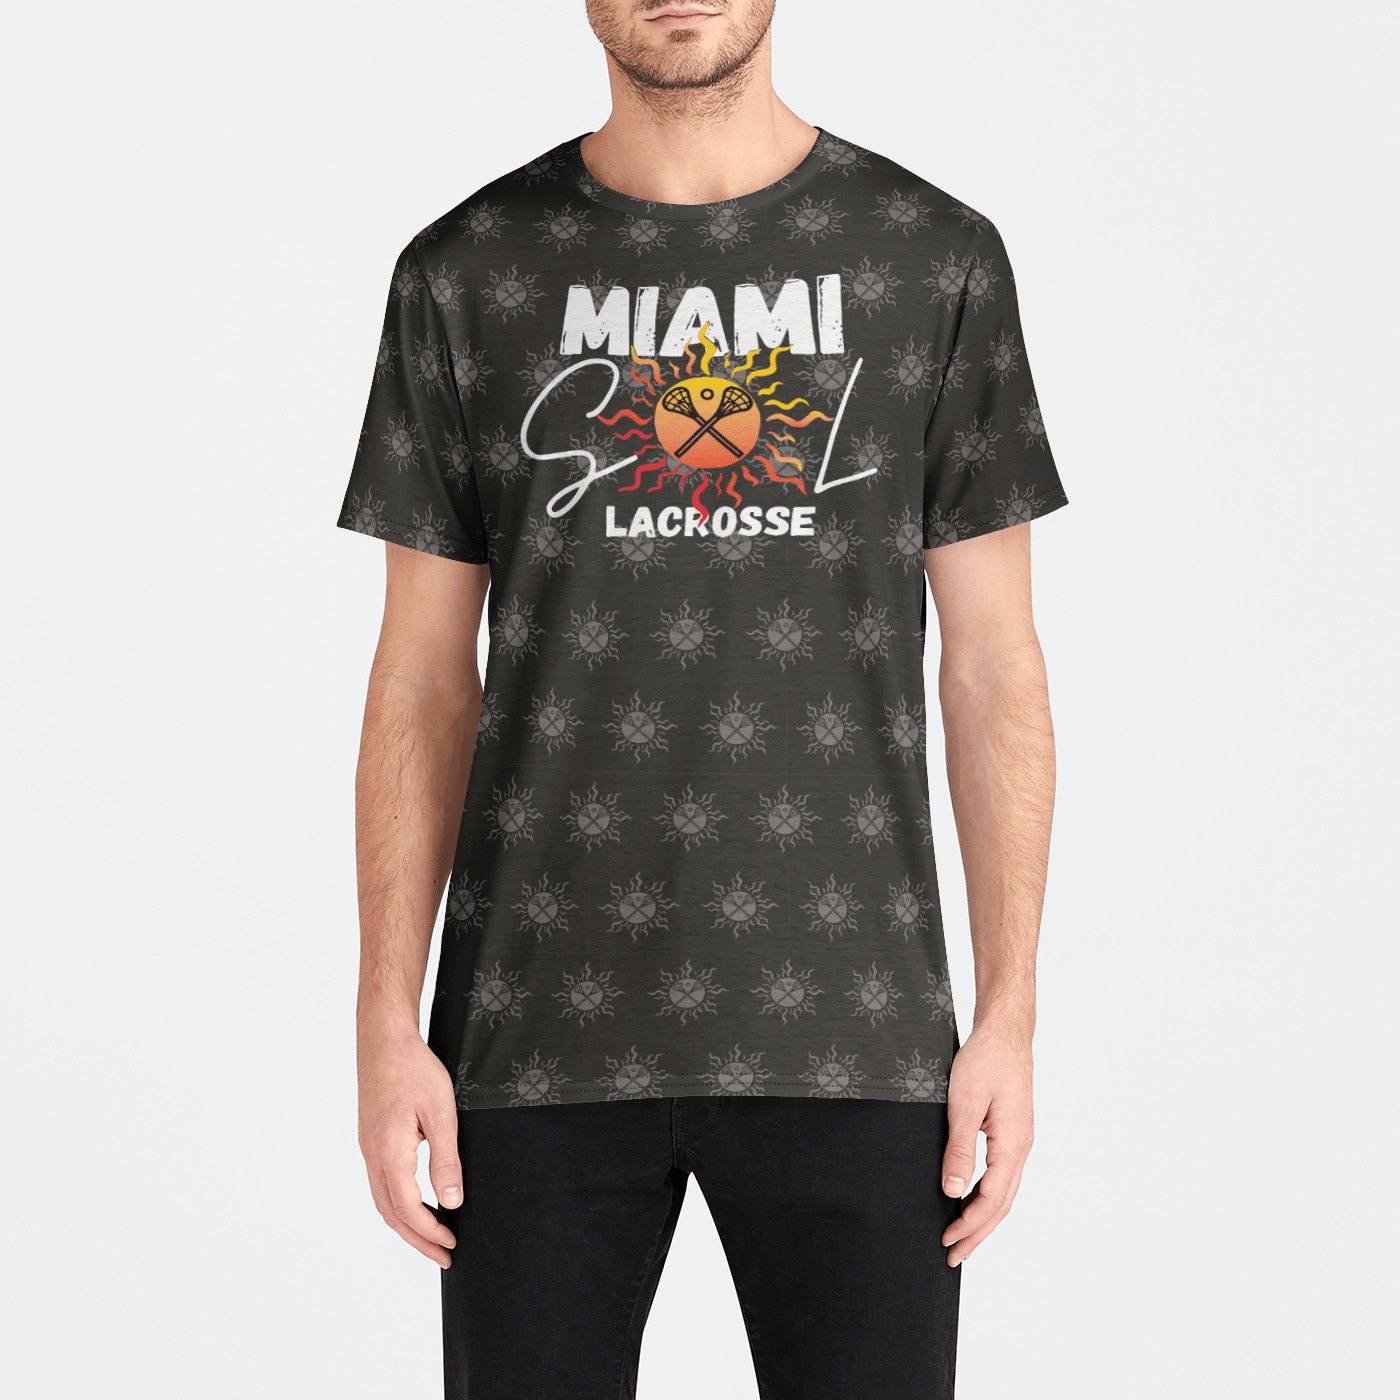 Miami SOL Lacrosse Athletic T-Shirt (Men's) Signature Lacrosse